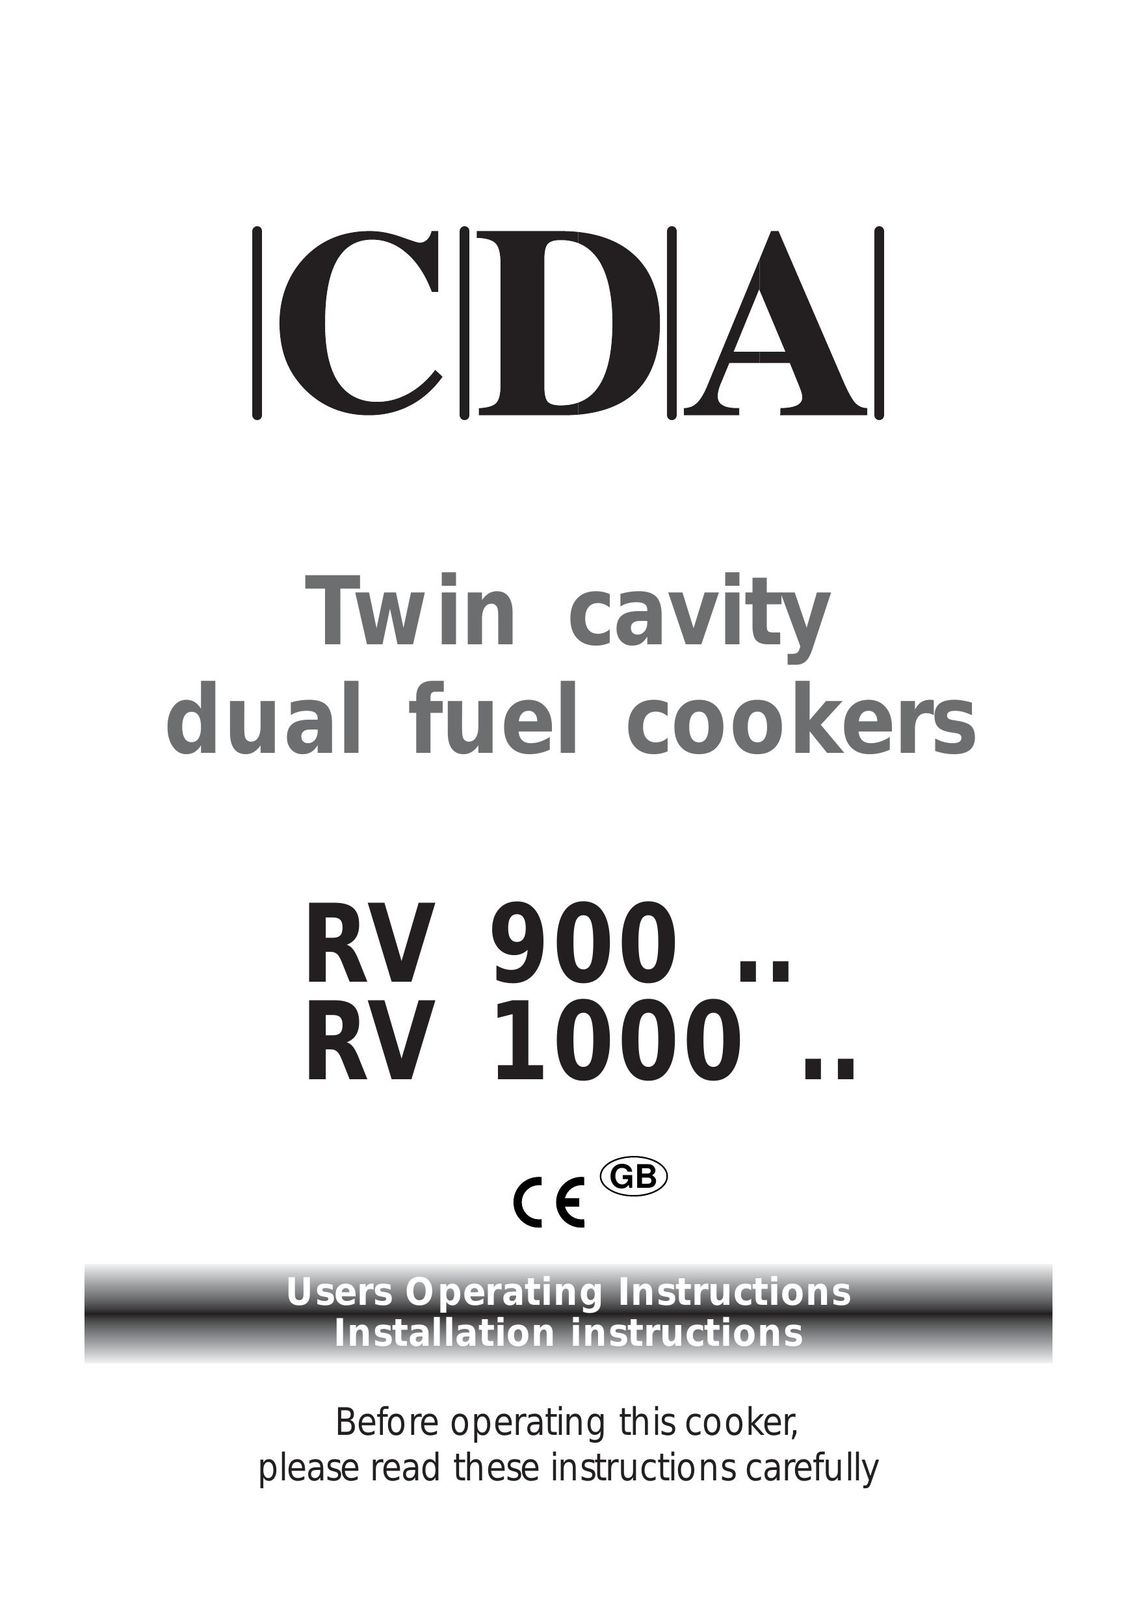 CDA RV 1000 Cooktop User Manual